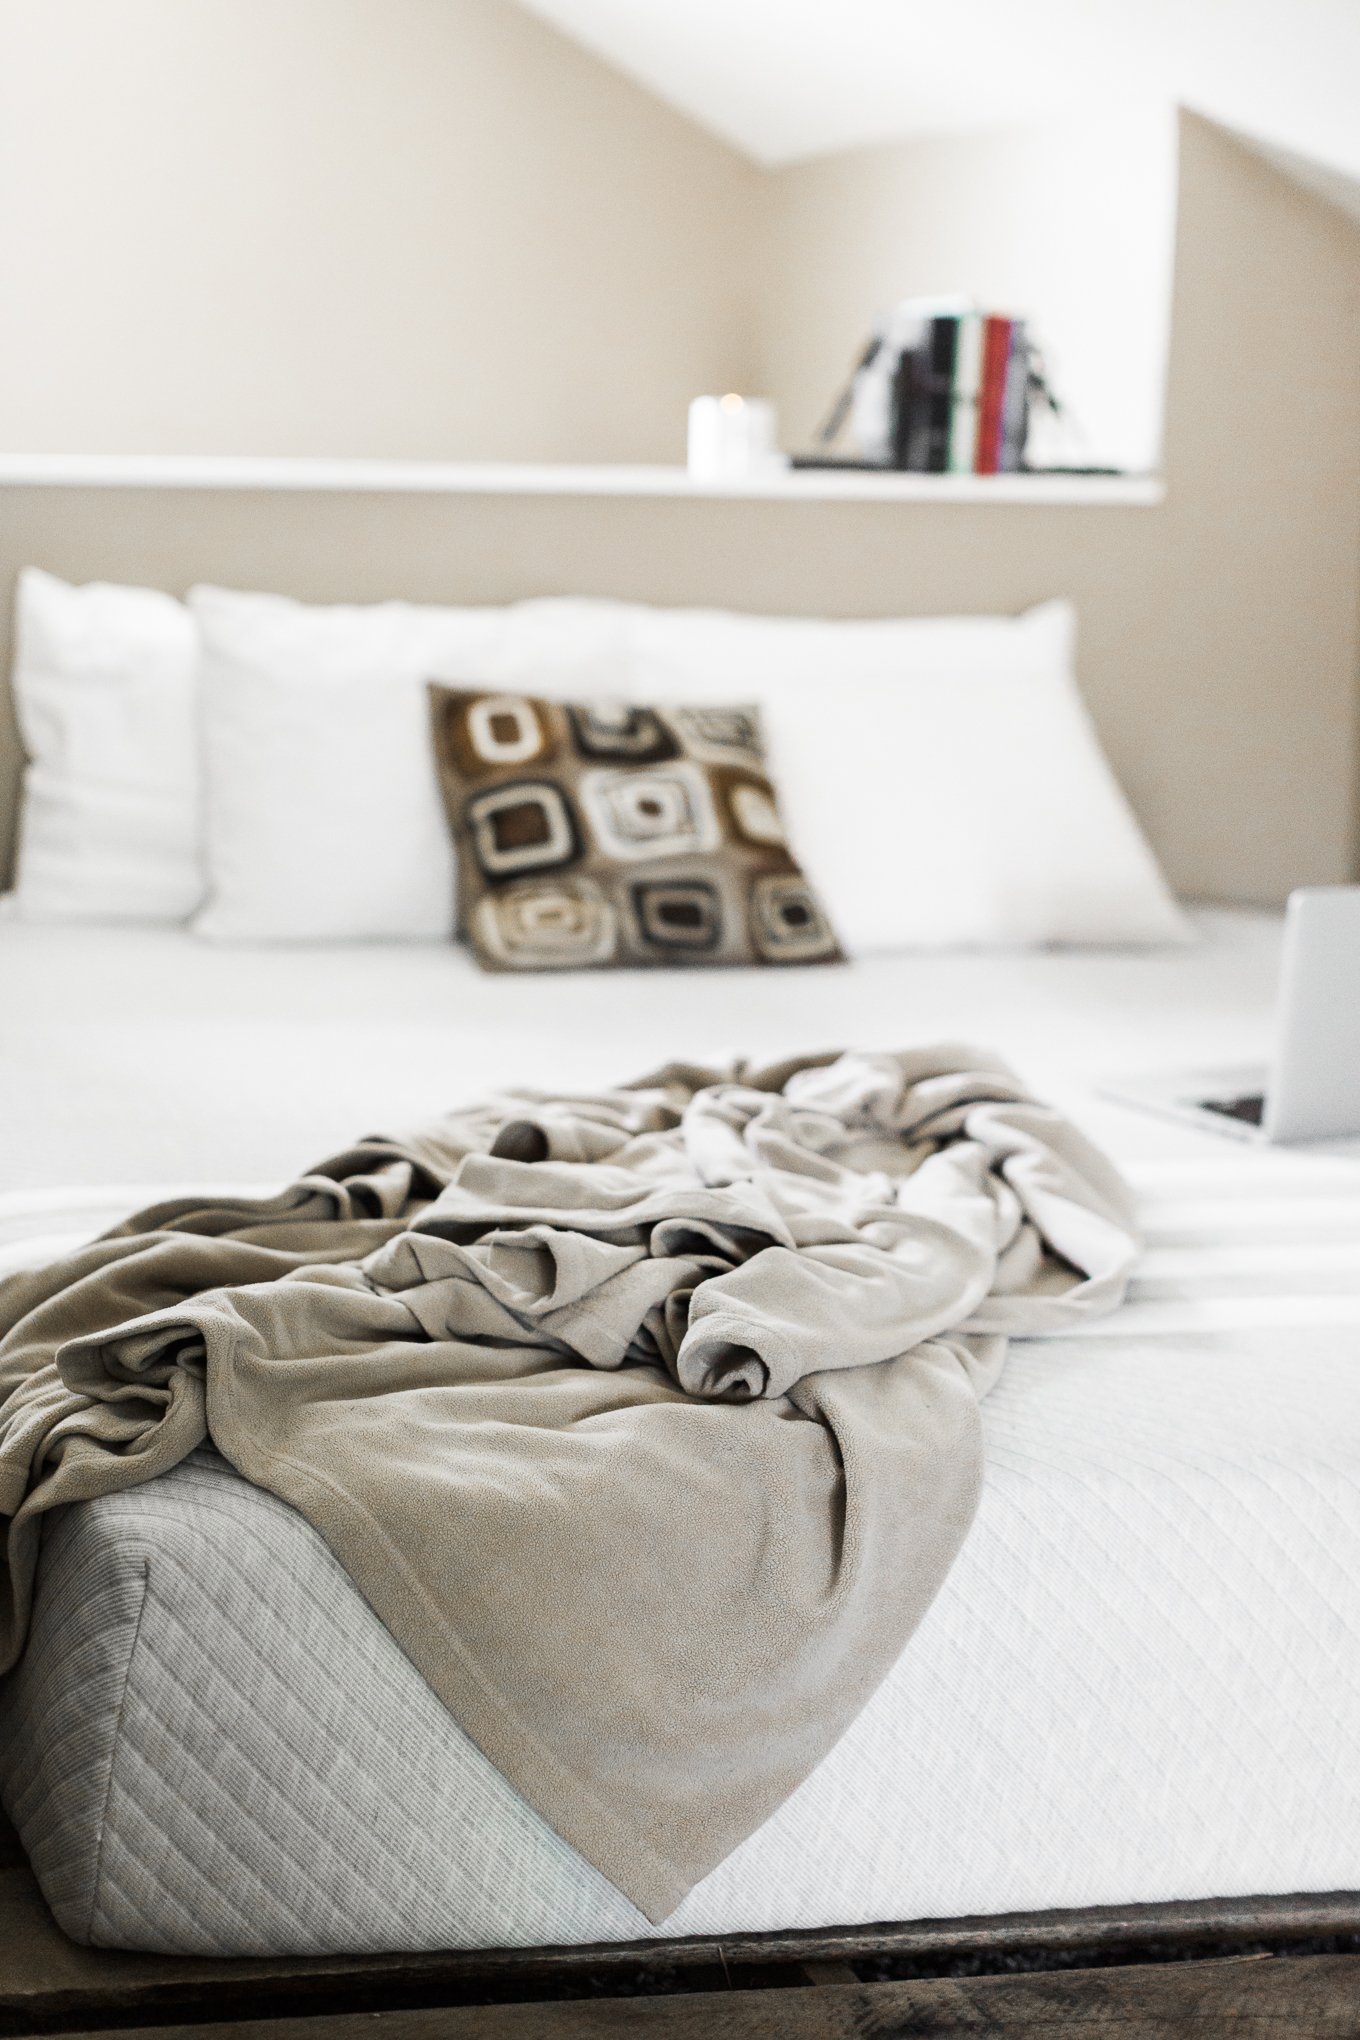 leesa, lessa mattress, online mattress company review, leesa mattress review, lifestyle blog